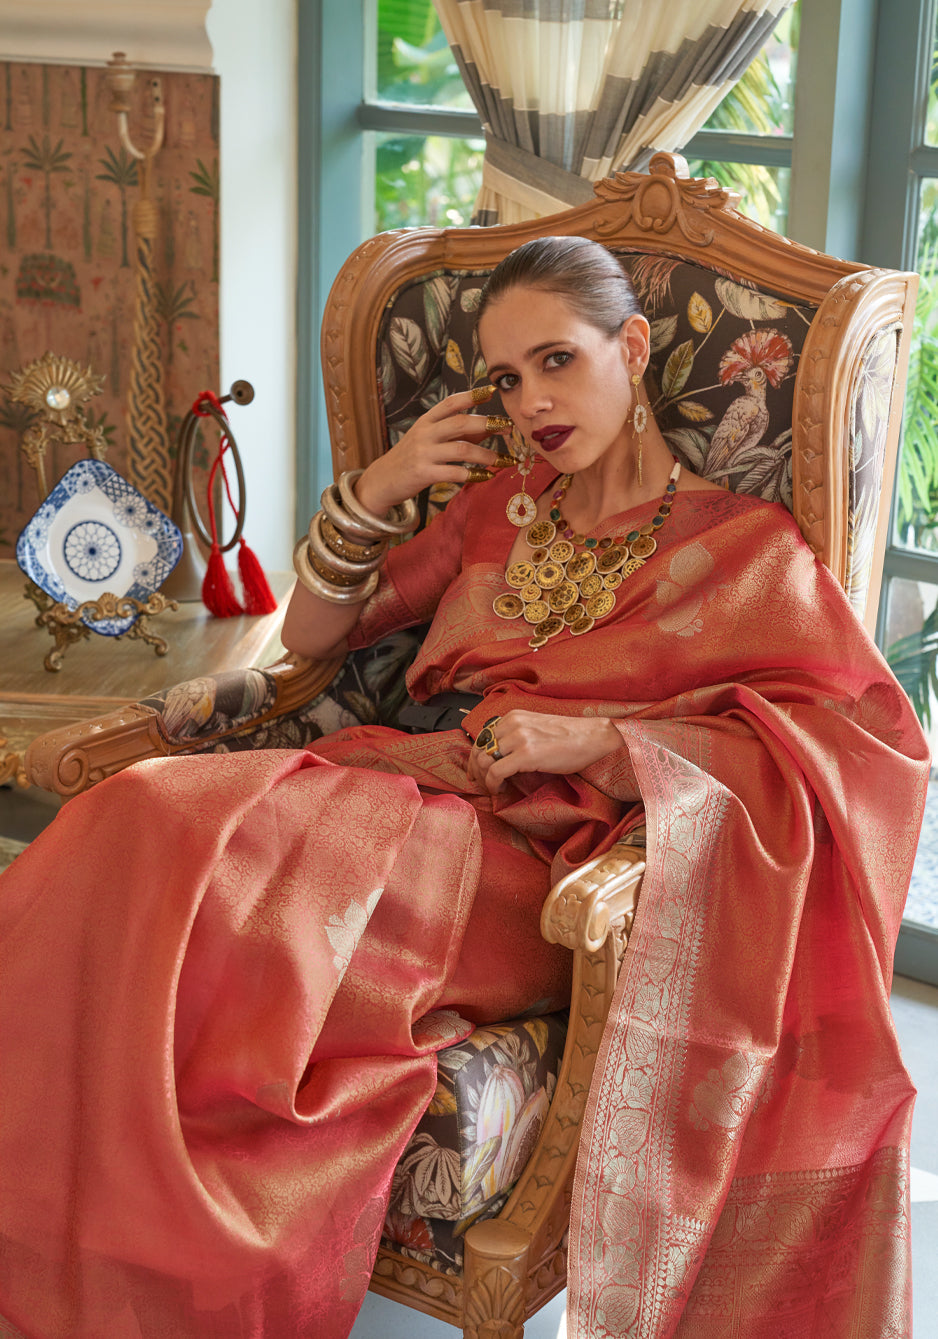 Buy MySilkLove Mona Lisa Peach Woven Banarasi Satin Tissue Silk Saree Online